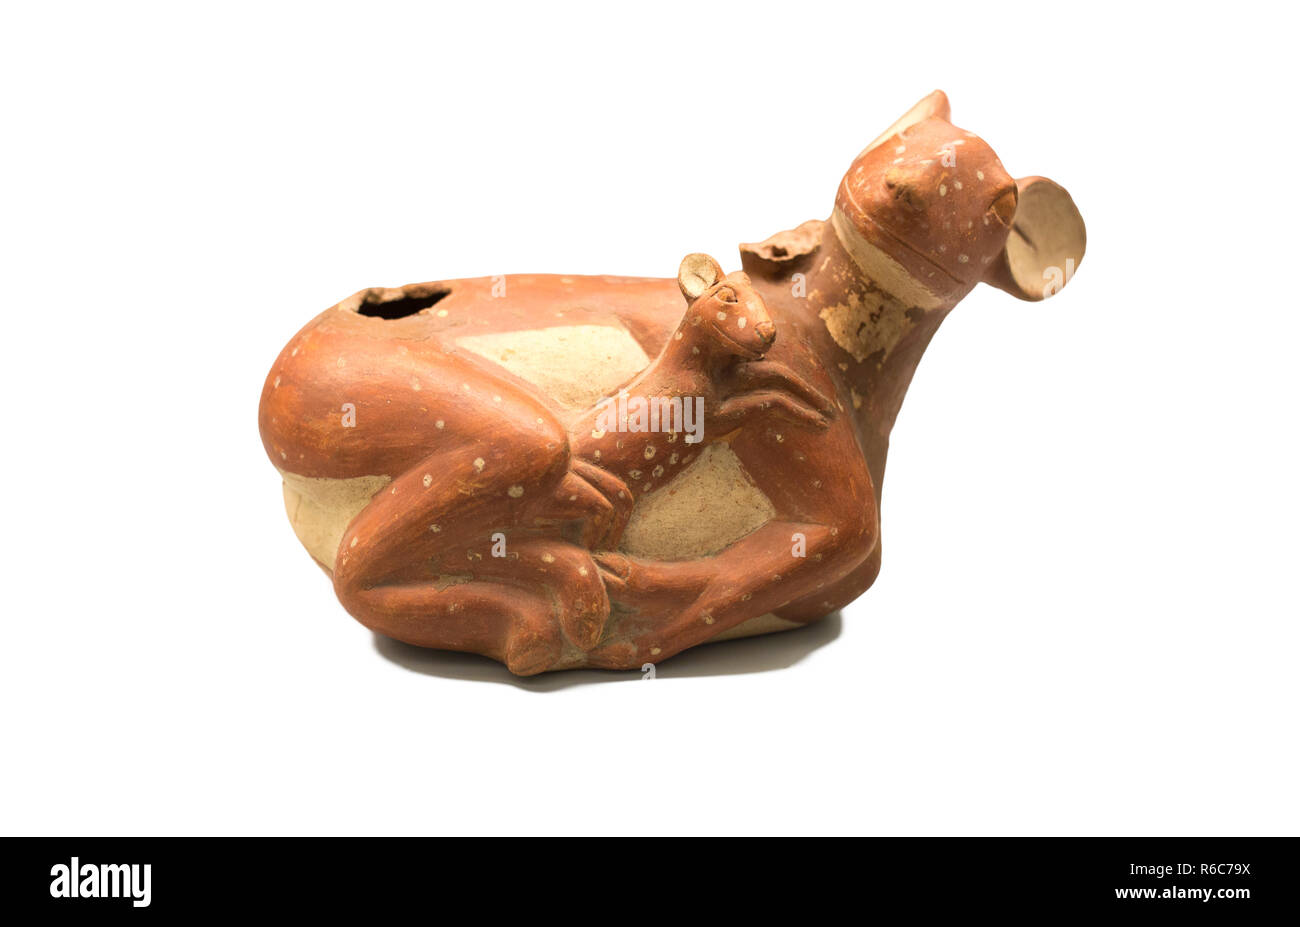 Madrid, España - El 8 de septiembre, 2018: vaso escultórico representando a un ciervo con su joven, cultura Moche, antiguo Perú.Museo de América, Madrid, España Foto de stock